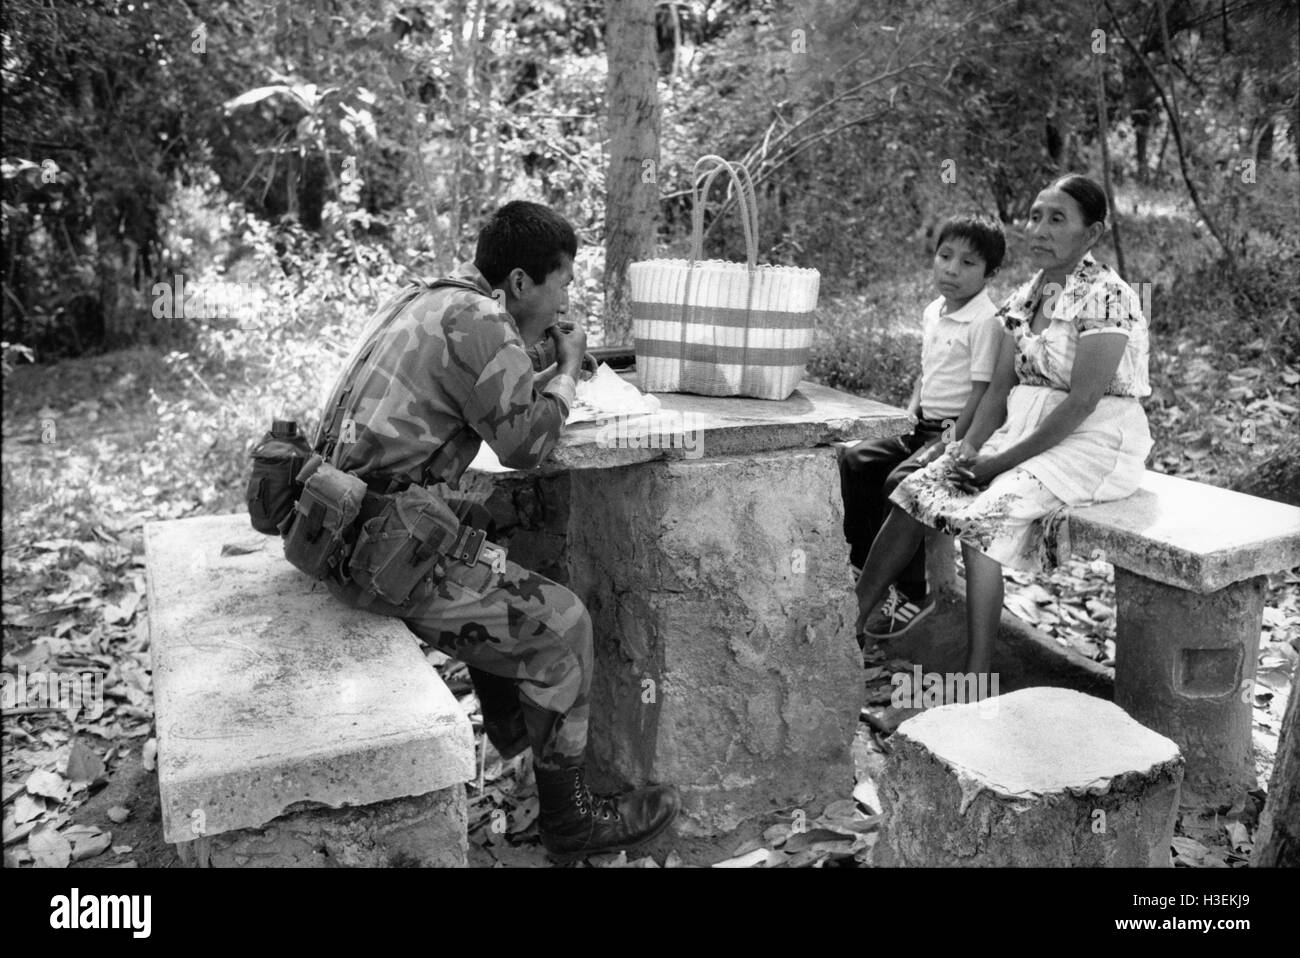 SAN SALVADOR, EL SALVADOR, FEB 1990 Mutter beobachtet ihren Sohn, ein Soldat in der Armee von Salvadorn, das Essen, die sie ihm bei einem Besuch in seiner Kaserne gebracht hat. Stockfoto